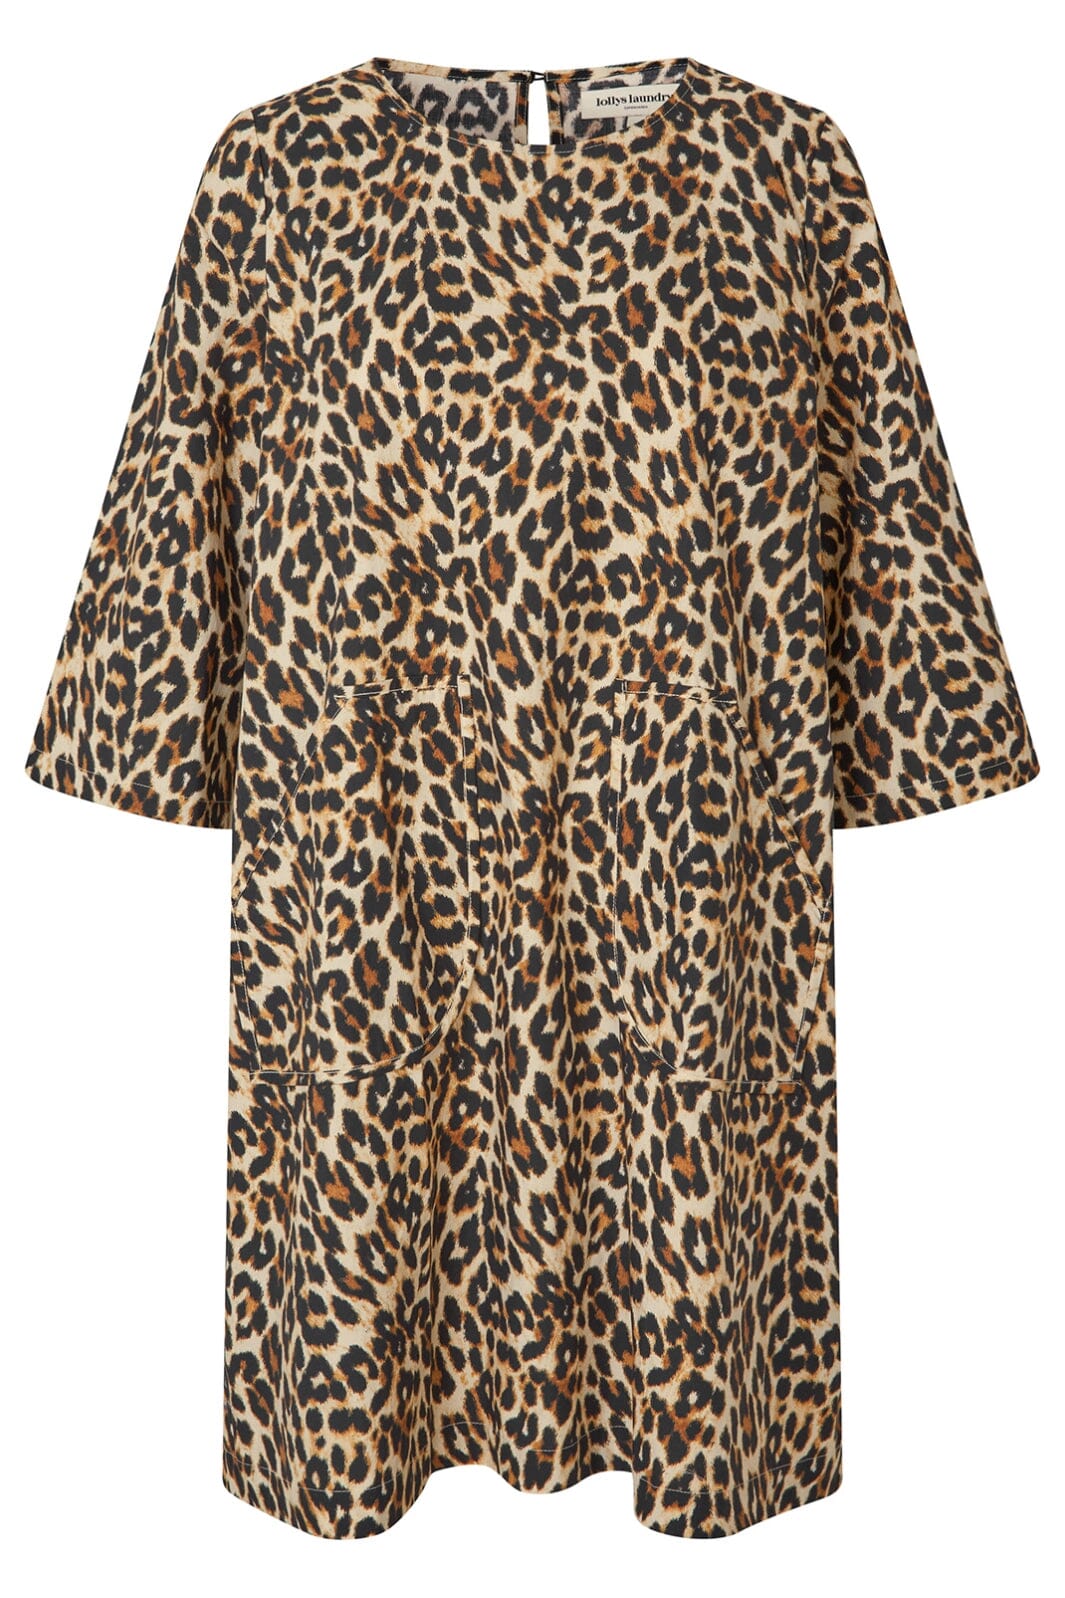 Forudbestilling - Lollys Laundry - Carlall Short Dress Ss - 72 Leopard Print Kjoler 